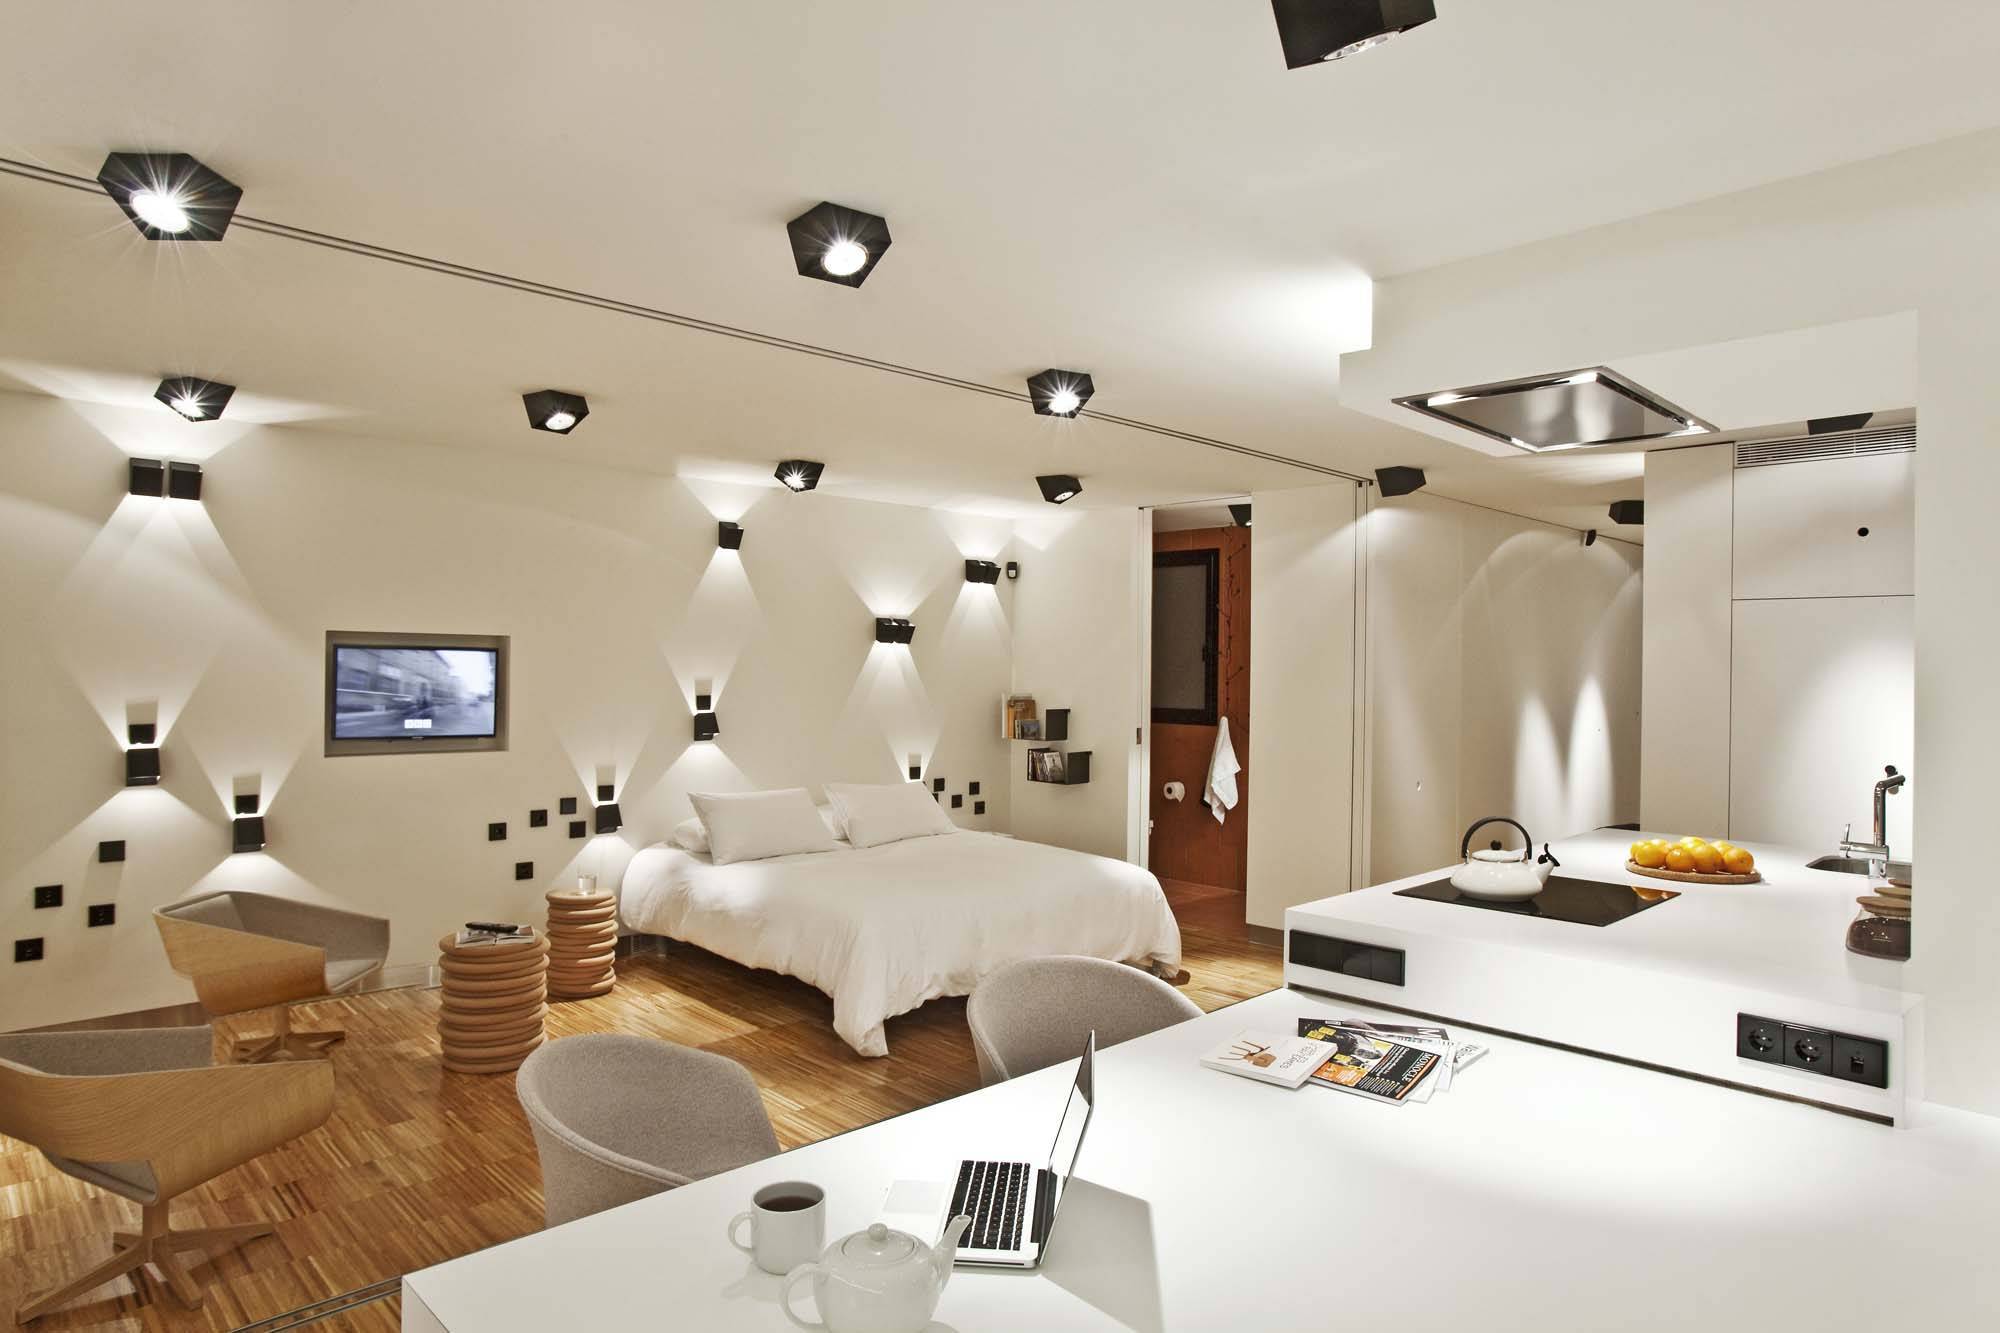 Хорошее освещение в комнате - 7 главных правил. лучшие решения при проектировании и дизайне.